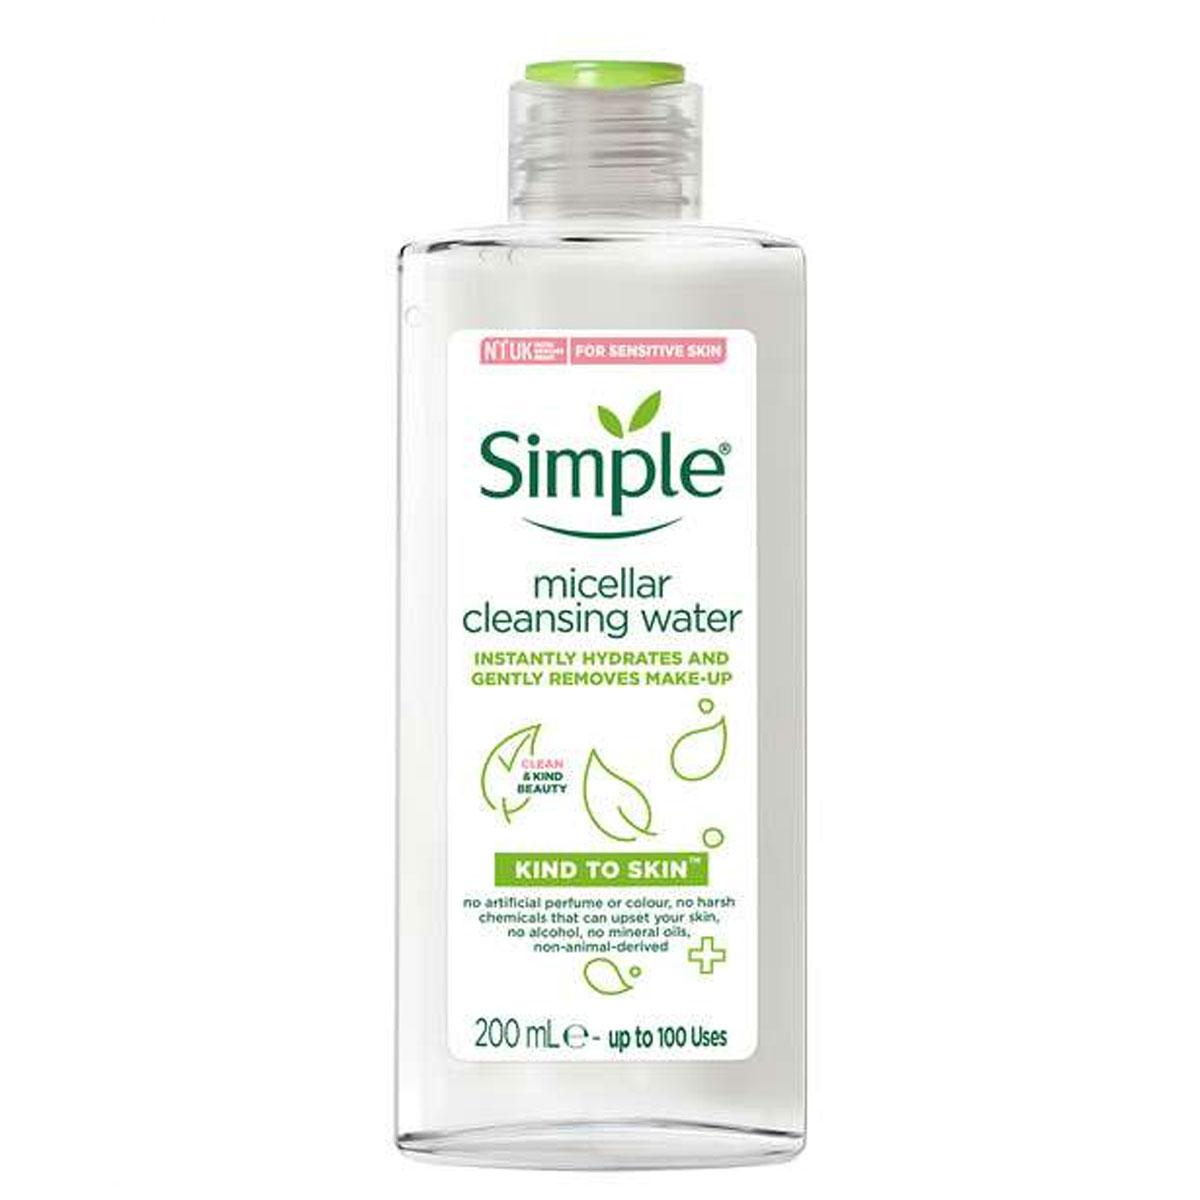 میسلار واتر پاک کننده  - micellar cleansig water  kind to skin